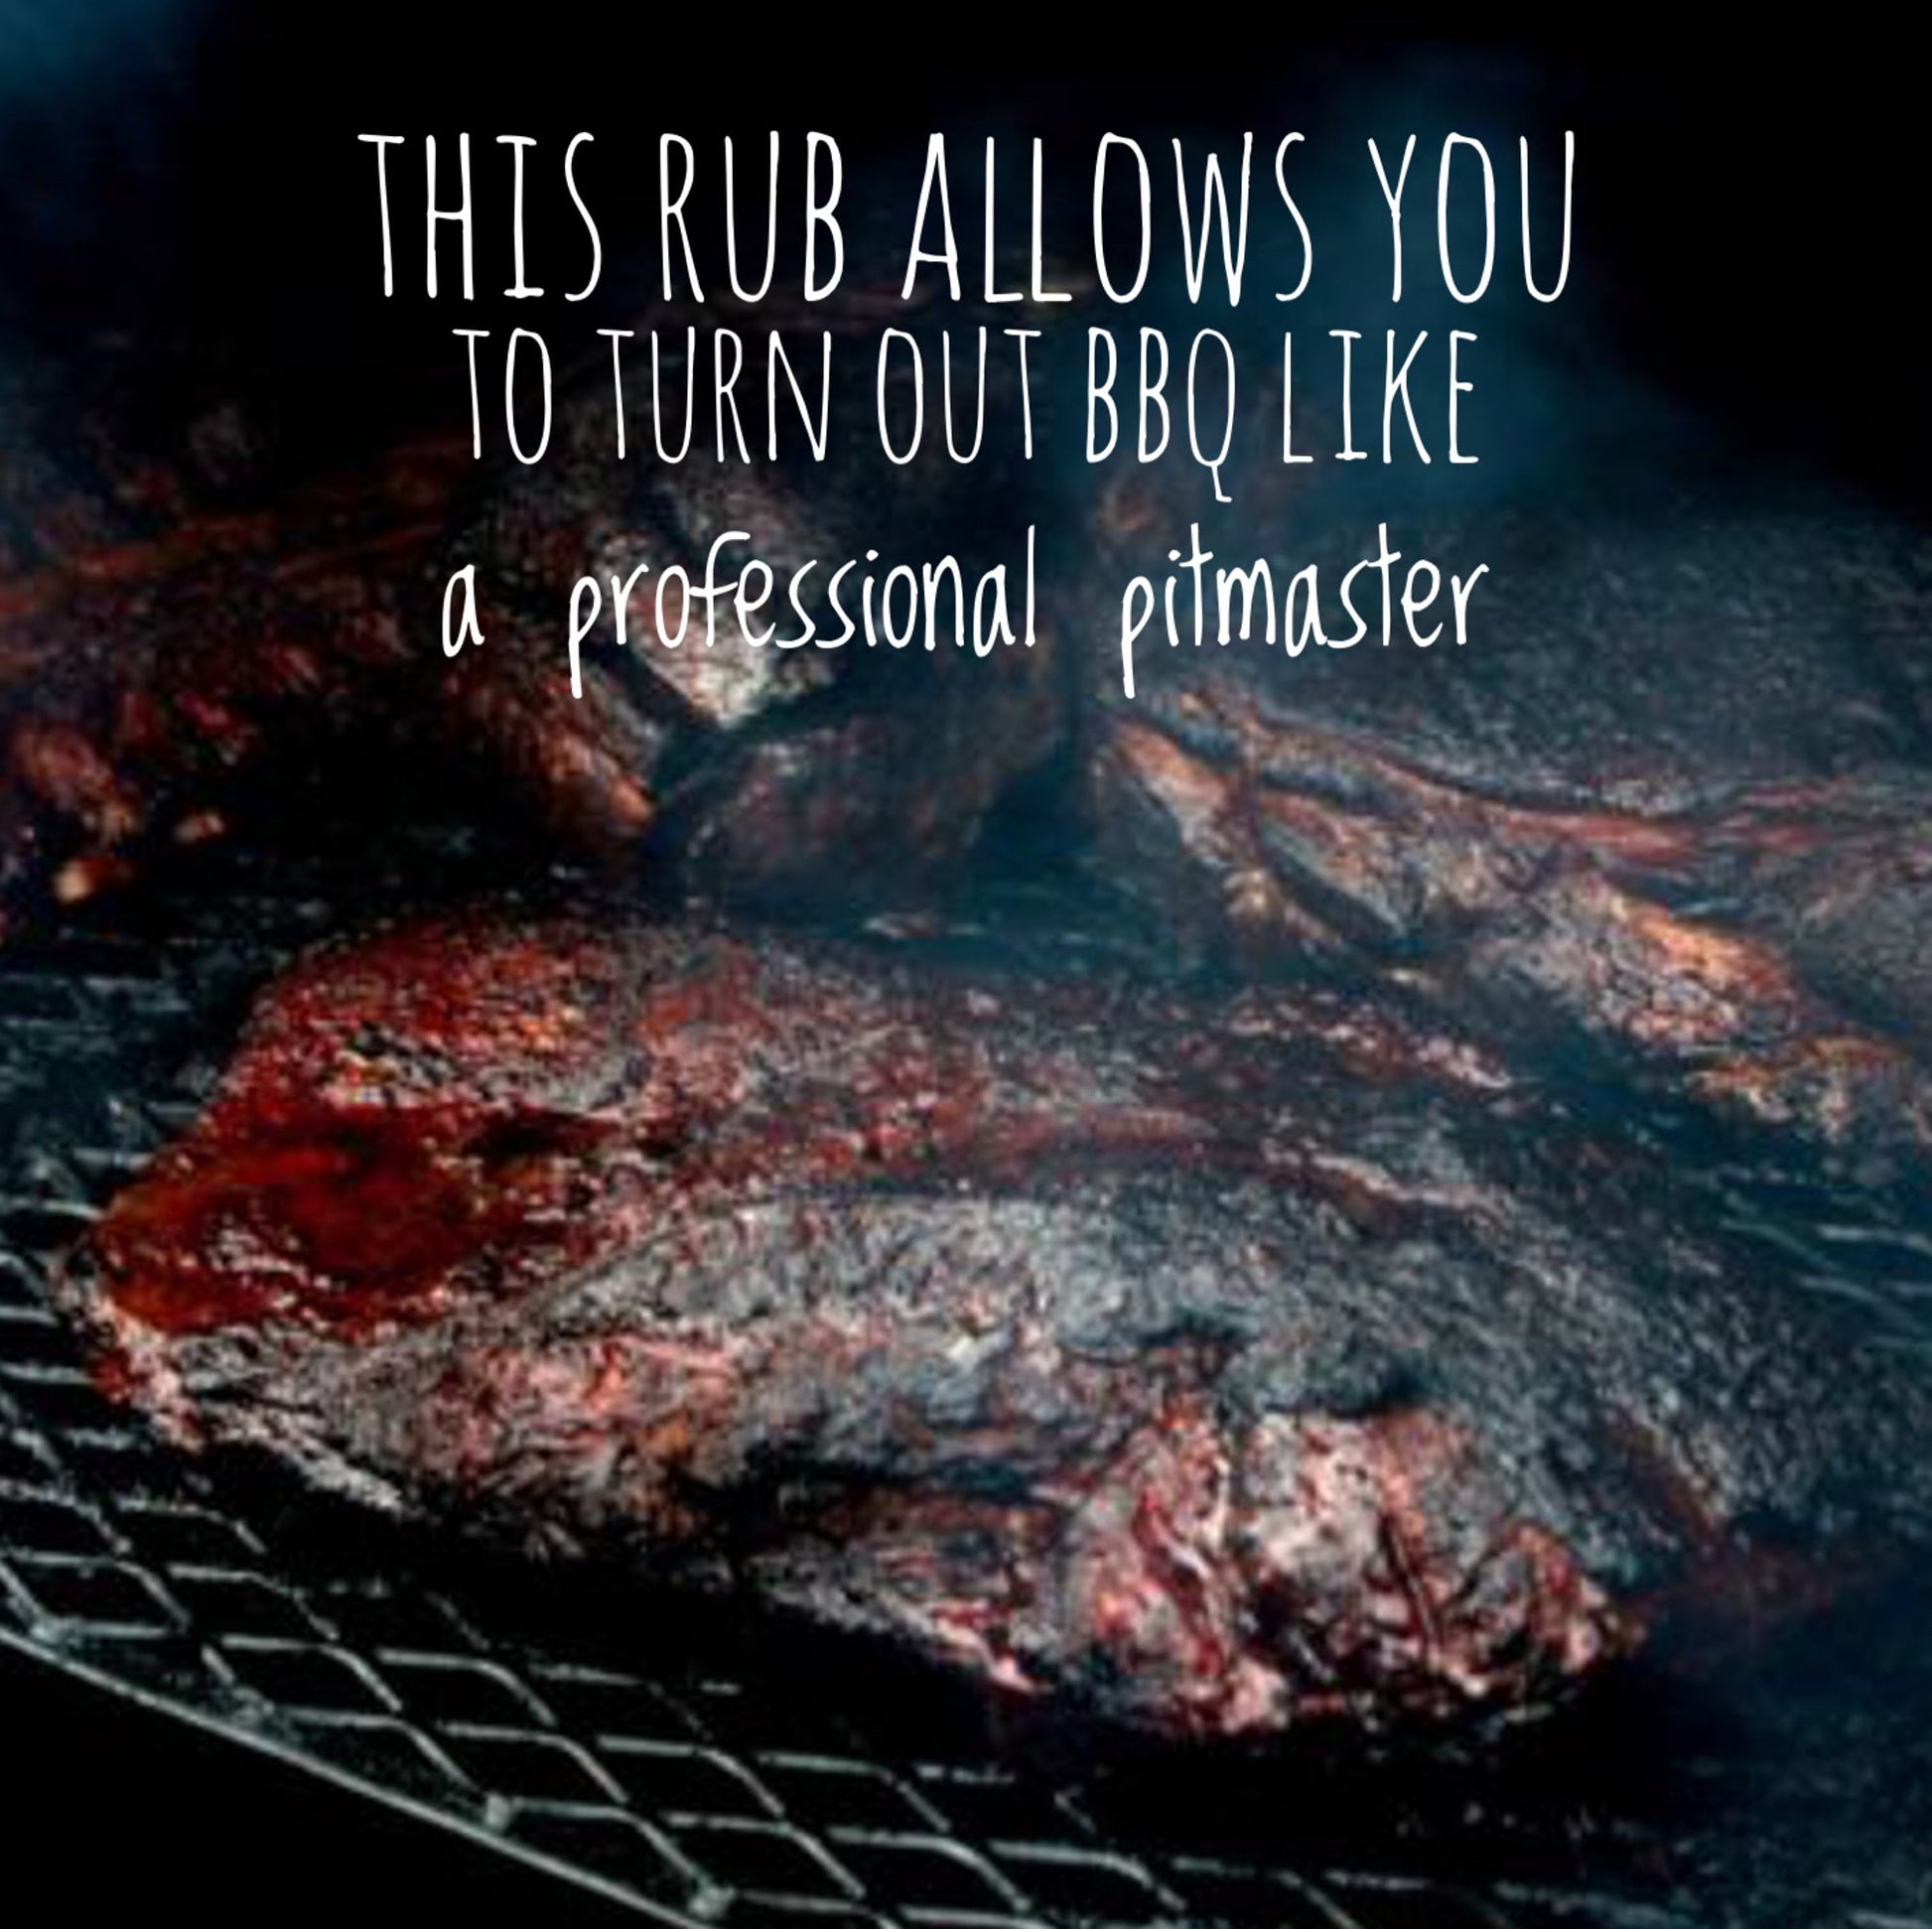 meat seasonings and rubs